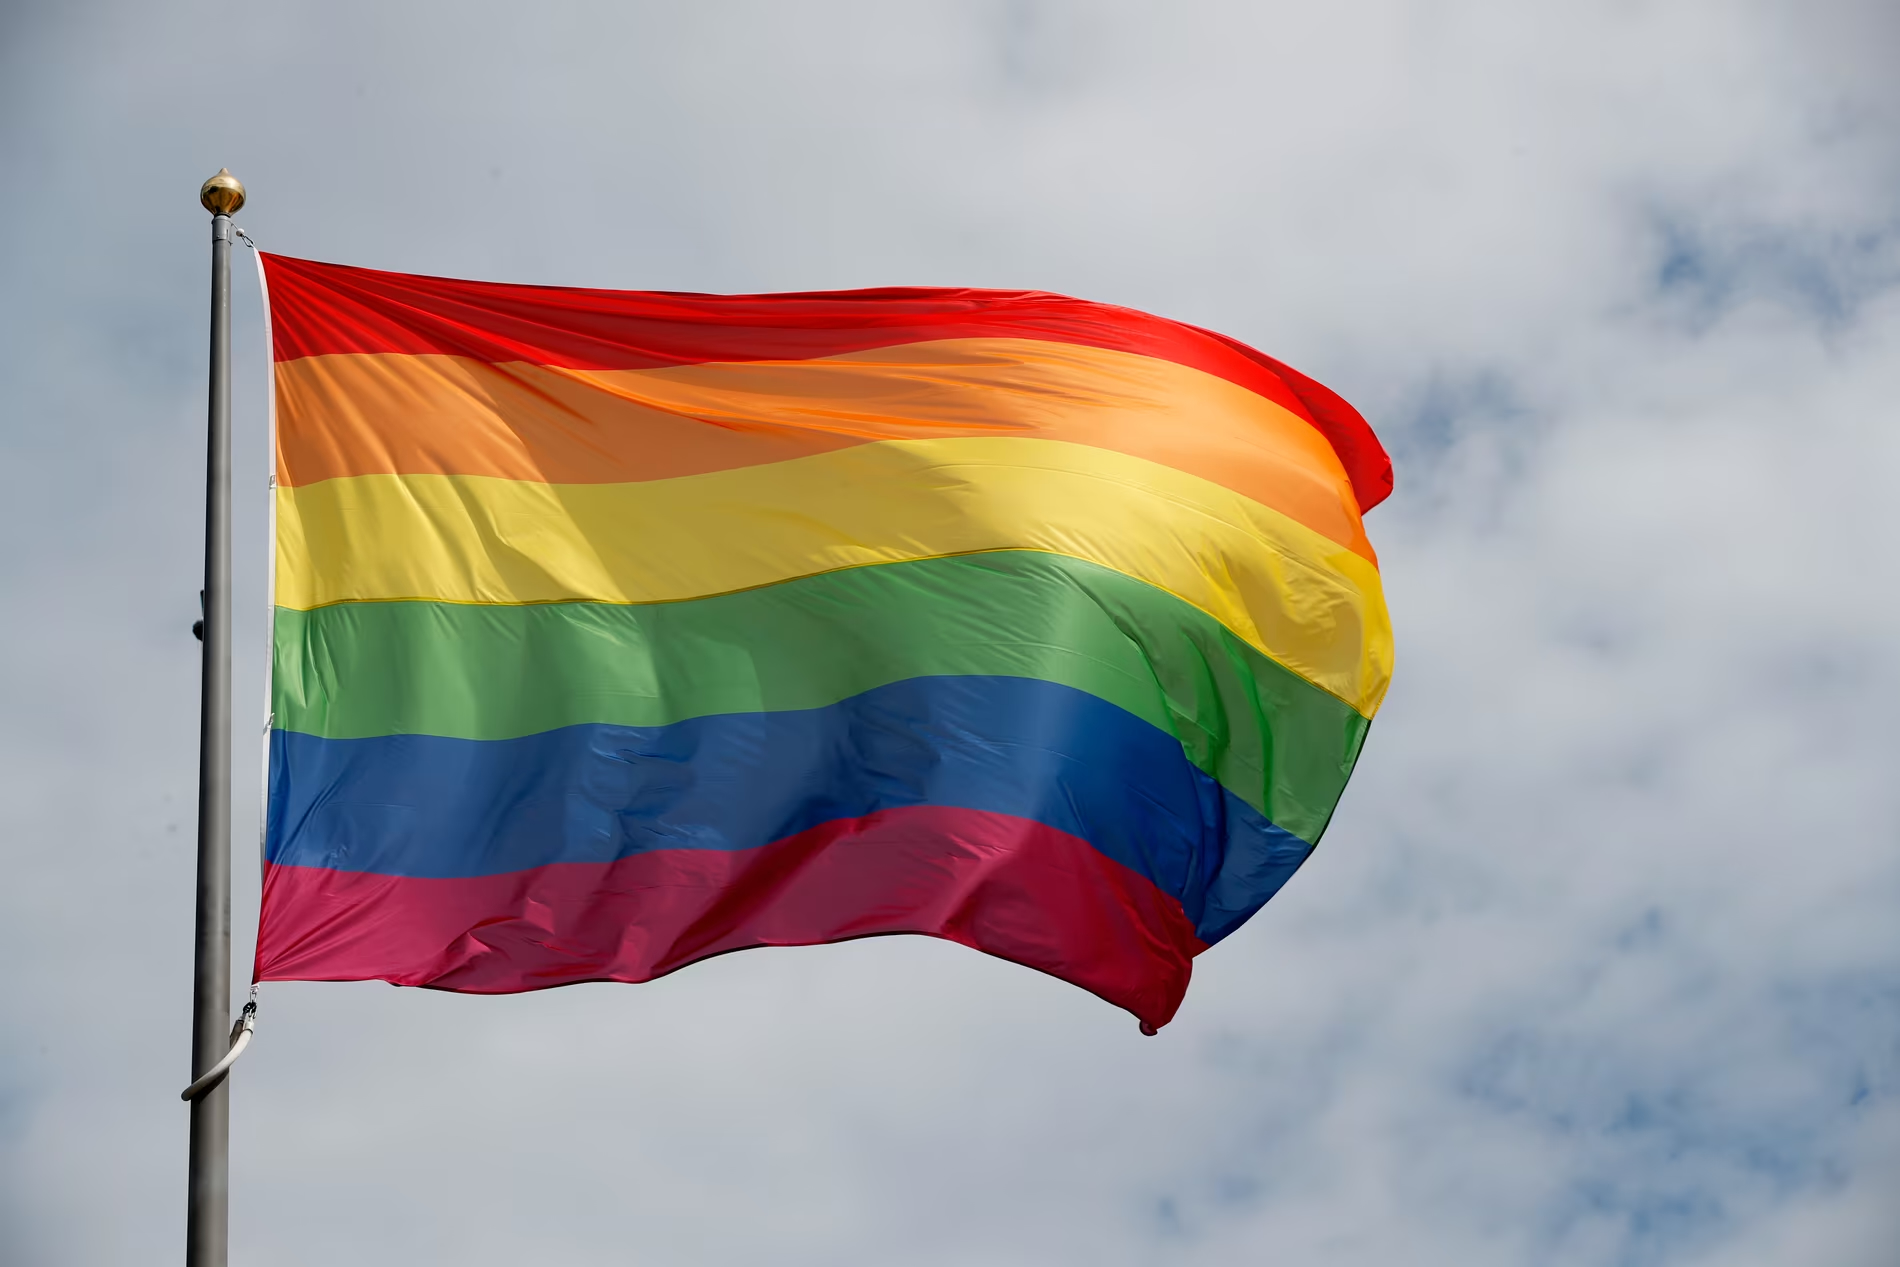 Jeg støtter Ålesund-rektoren i å nekte å følge ordre, og flagge for Pride, tross flakknekten fra kommunedirektøren. En viss styringsrett bør man gi norske rektorer, skriver Danby Choi. Pride Flagg regnbueflagg. (Foto: Lise Åserud/NTB.)